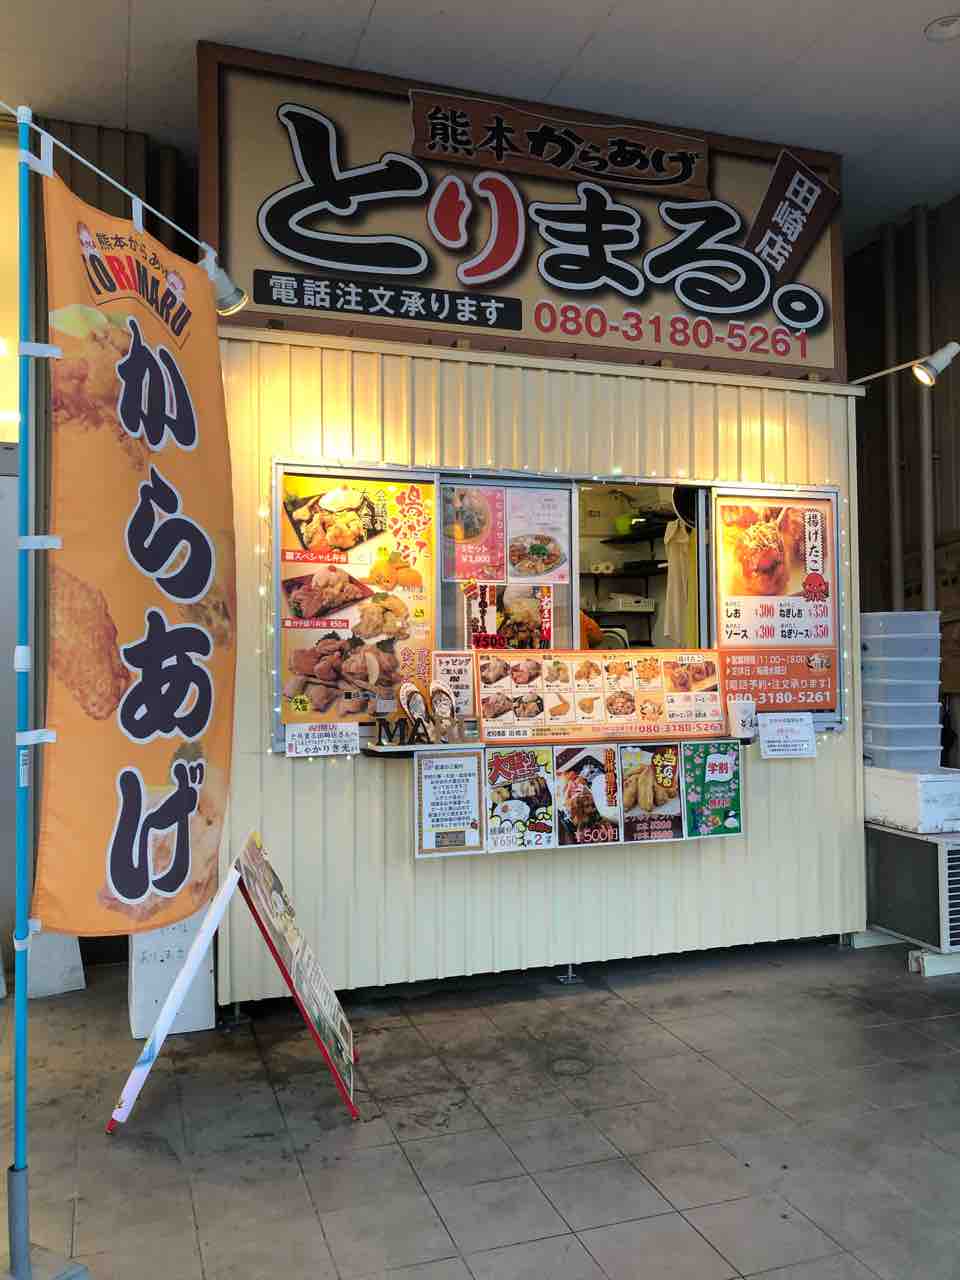 ボリューム満点のお弁当 熊本からあげ とりまる 新メニューが登場していた あゆ姫食い倒れ放浪記